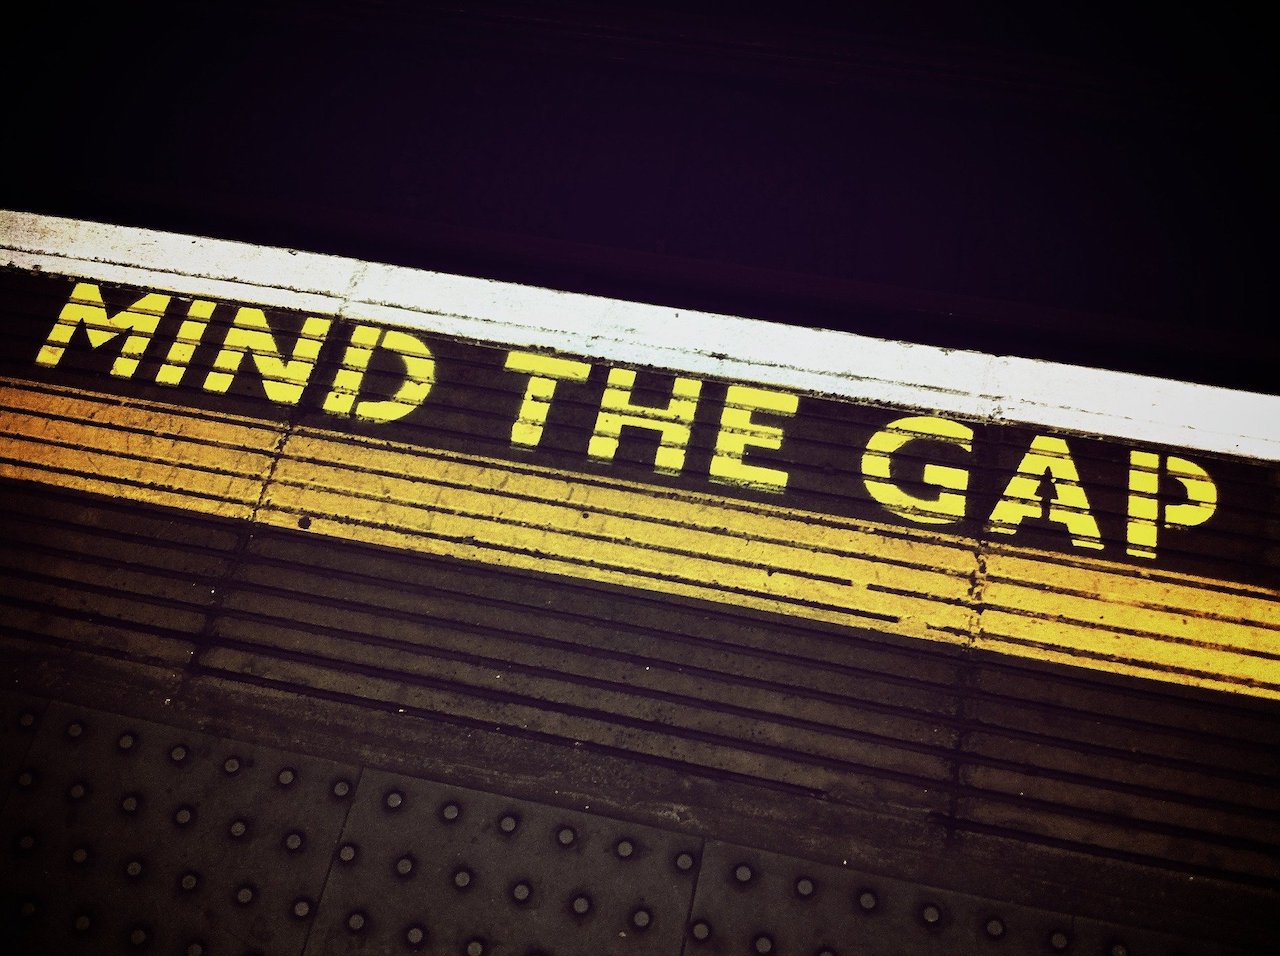 Mind the gap - London underground